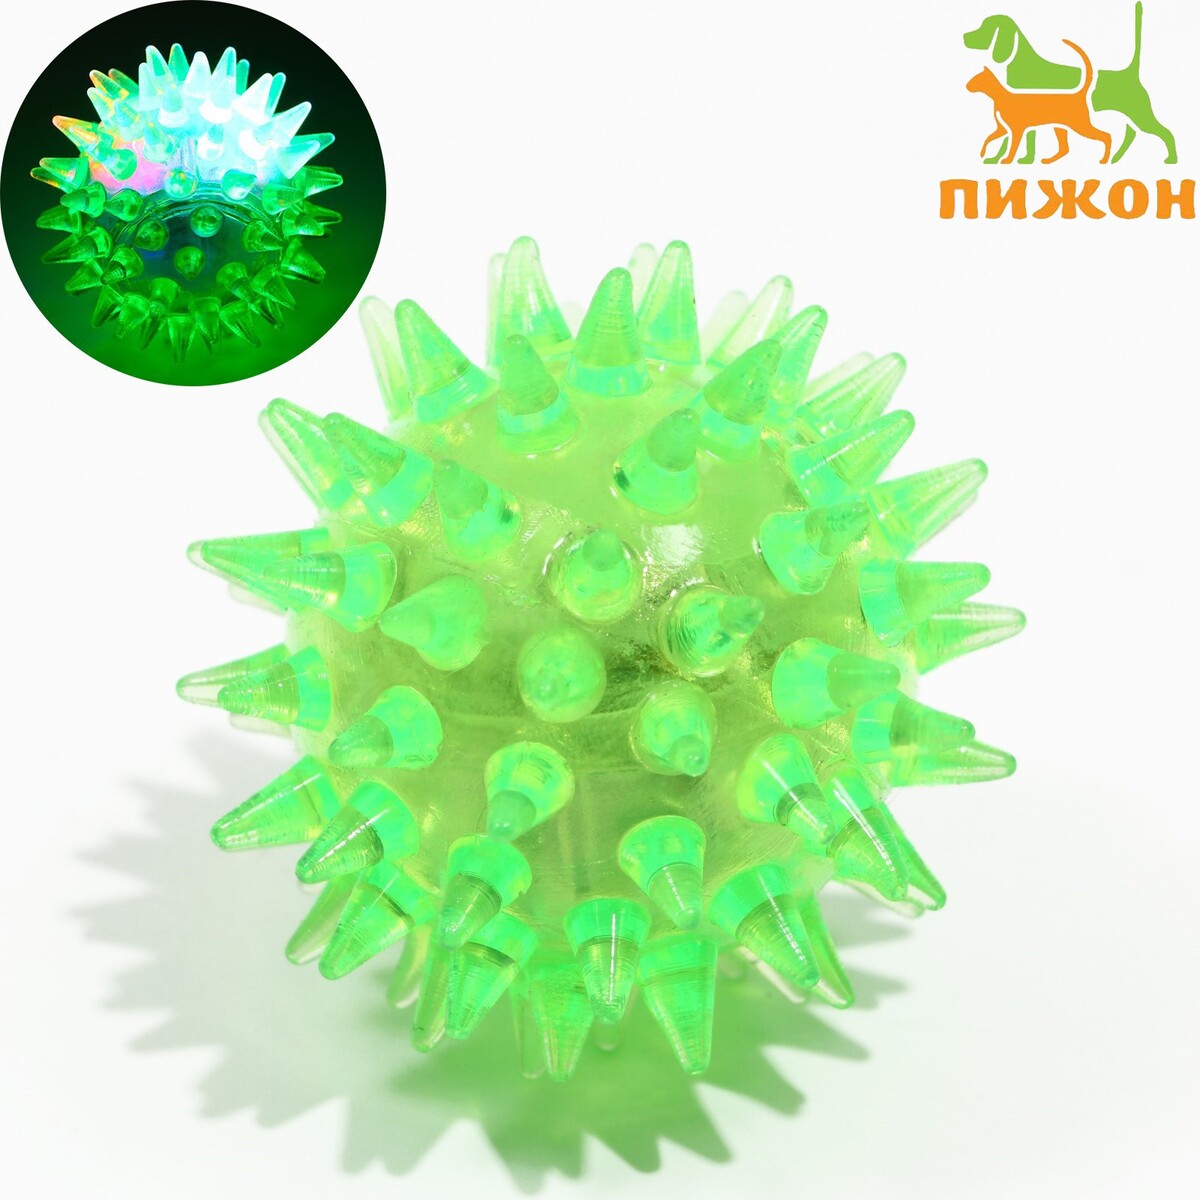 Мяч светящийся мини для кошек, tpr, 3,5 см, зеленый